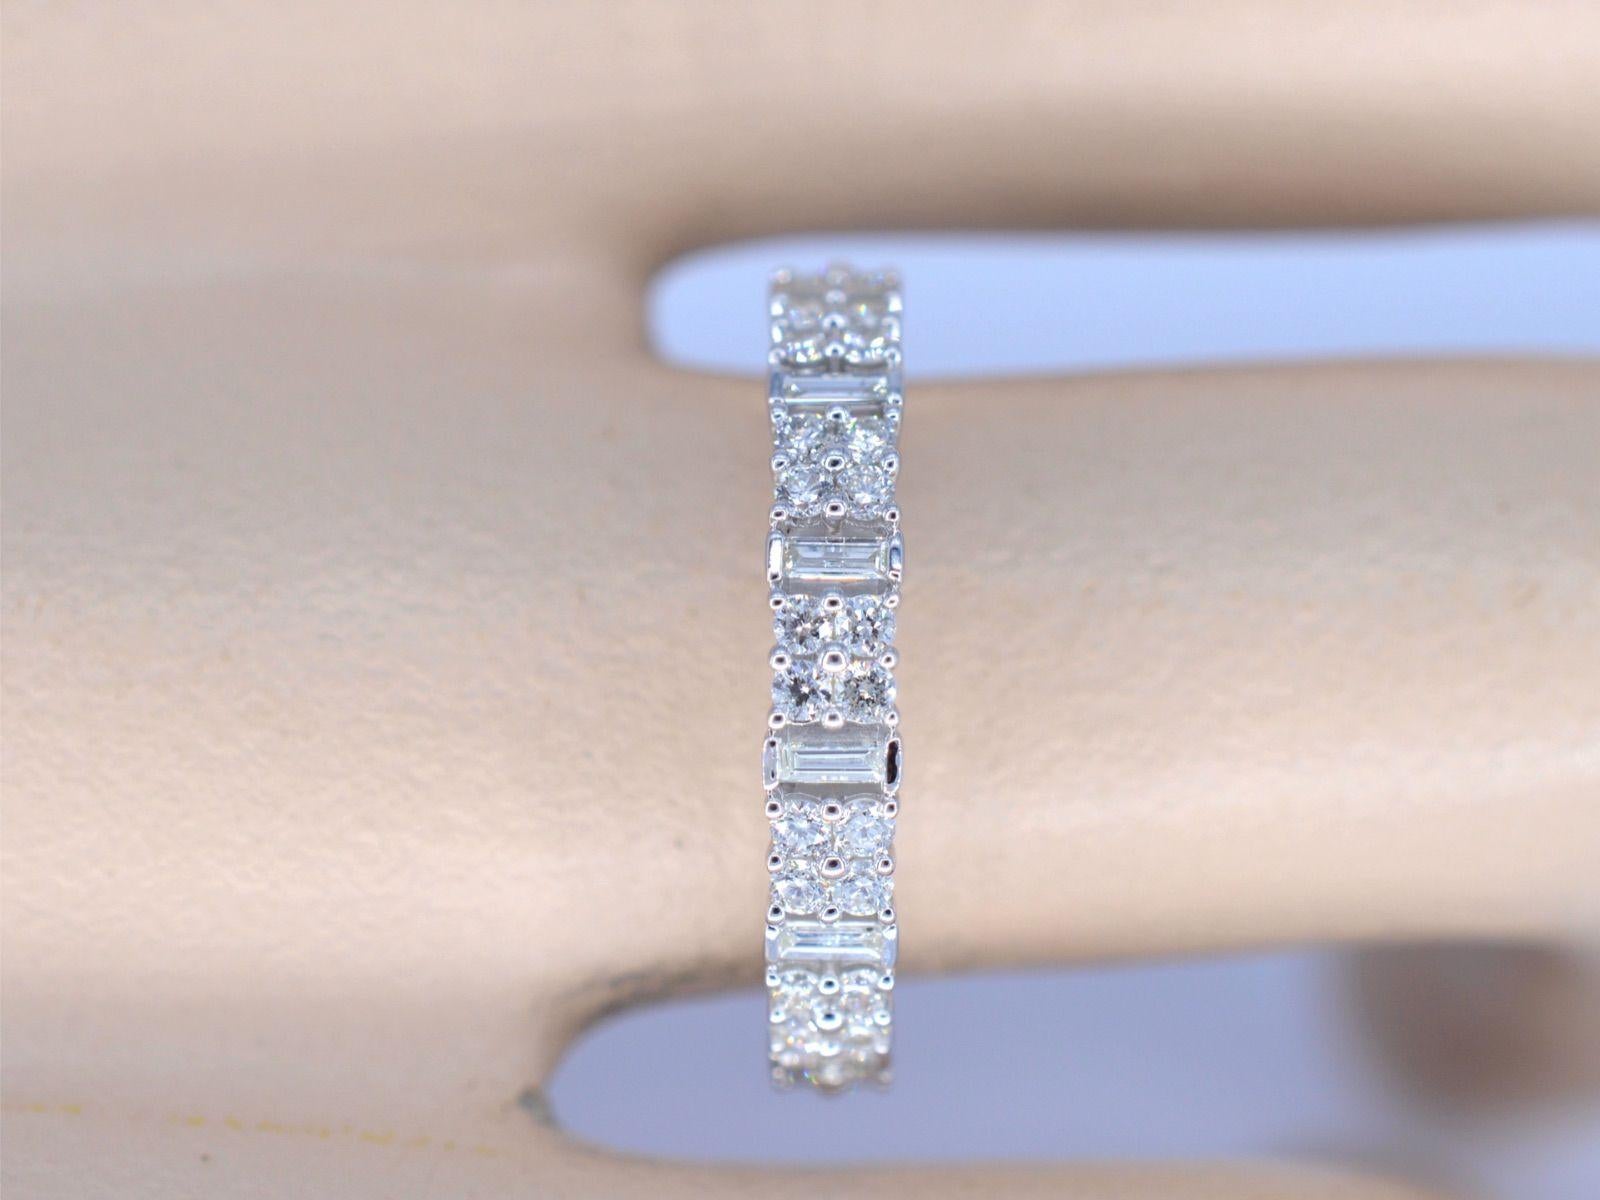 Erlauben Sie uns, Ihnen einen exquisiten Ring aus Weißgold vorzustellen, der mit einer atemberaubenden Reihe von Diamanten verziert ist. Dieser Ring zeichnet sich durch eine atemberaubende Kombination von Diamanten im Brillant- und Baguetteschliff